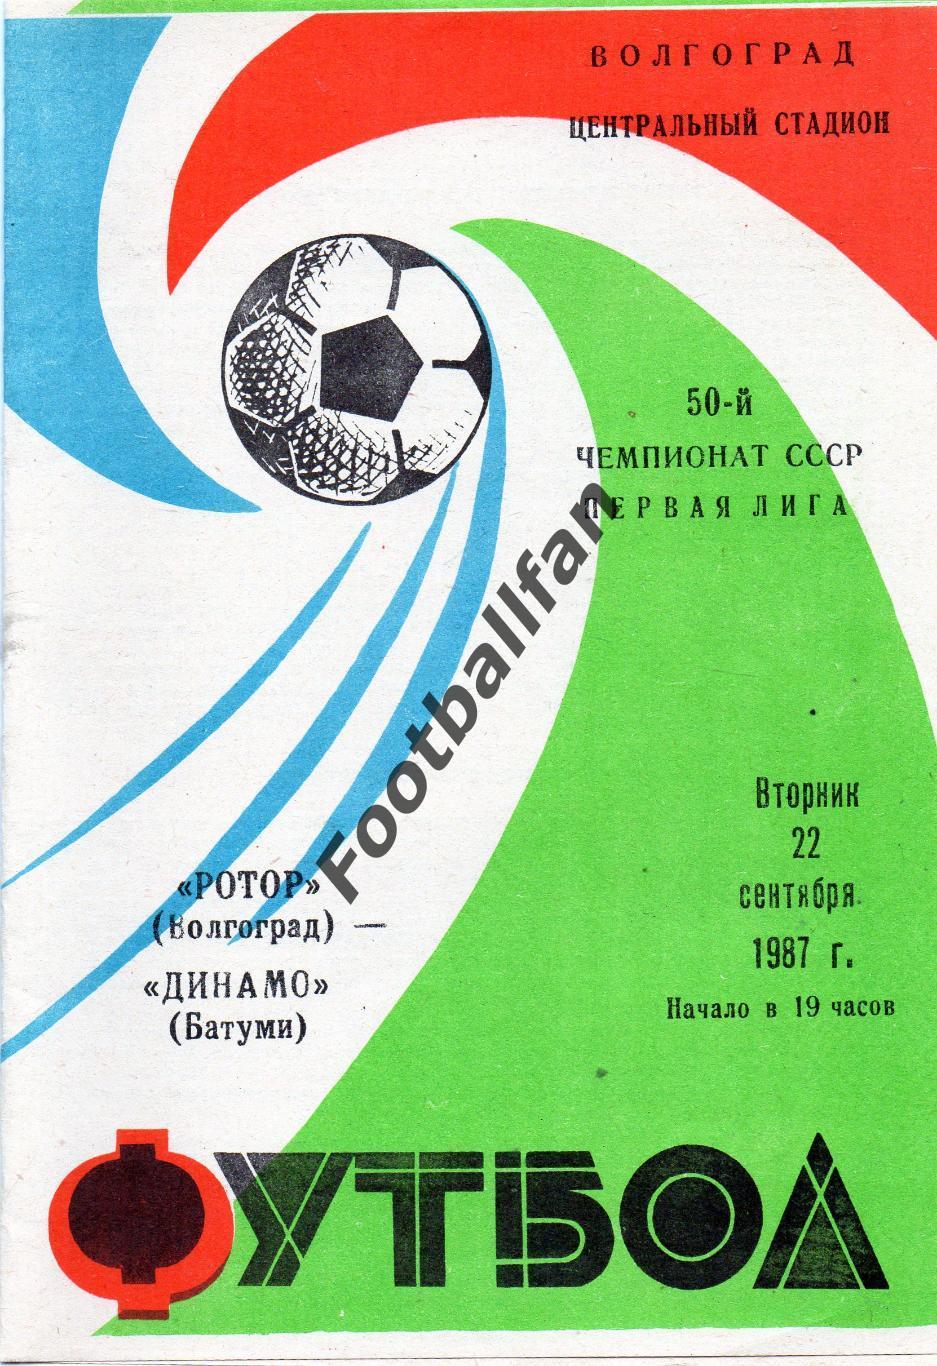 Ротор Волгоград - Динамо Батуми 22.09.1987